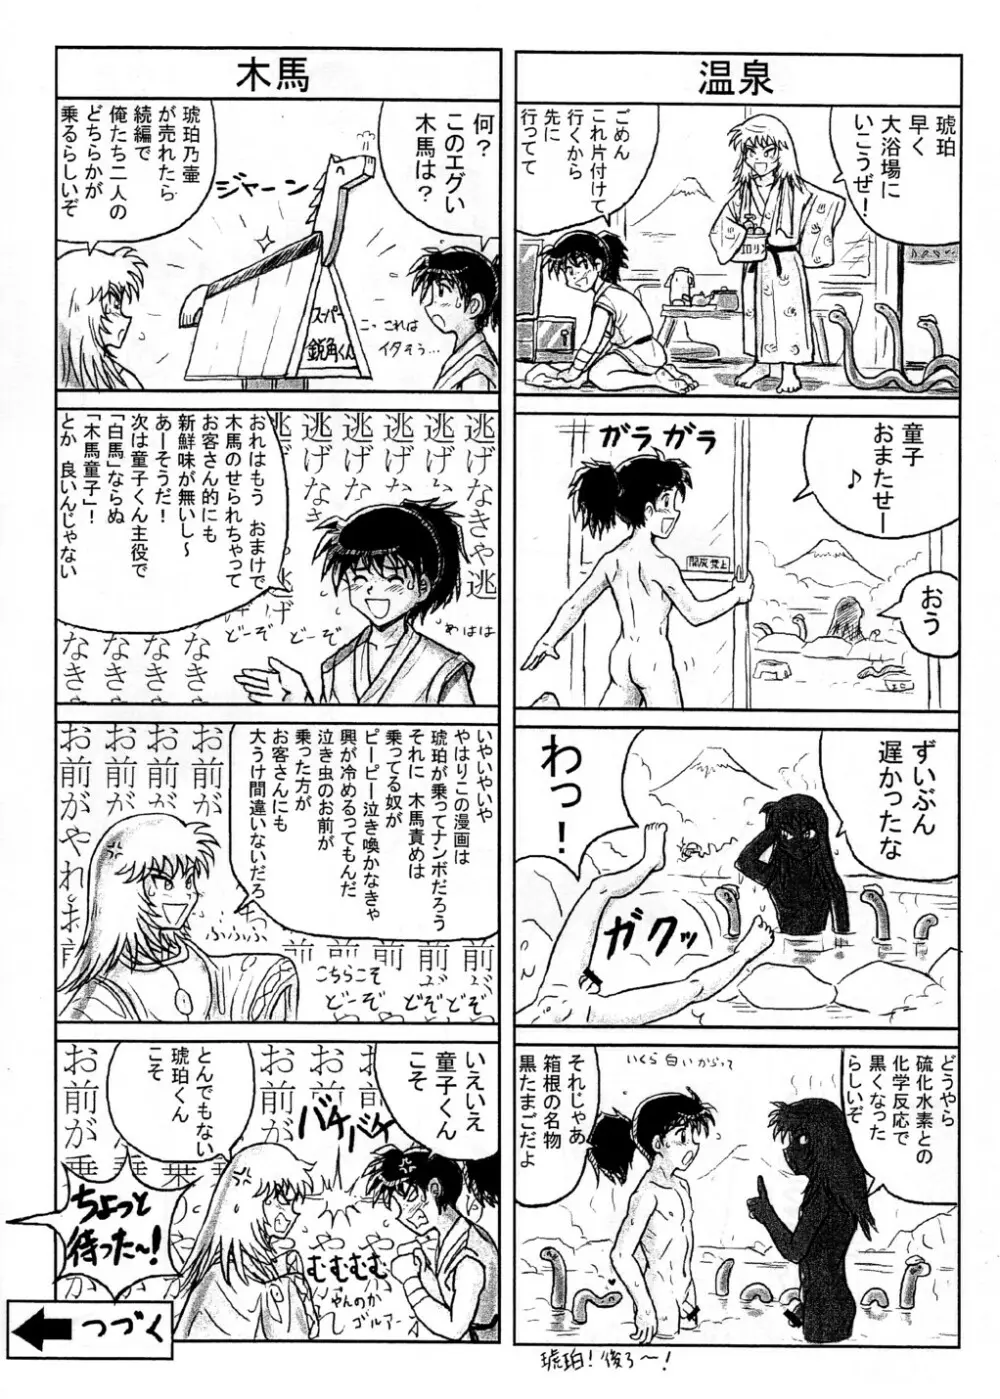 Takenokoya – Kohaku no Tsubo Manga Ban 8ページ